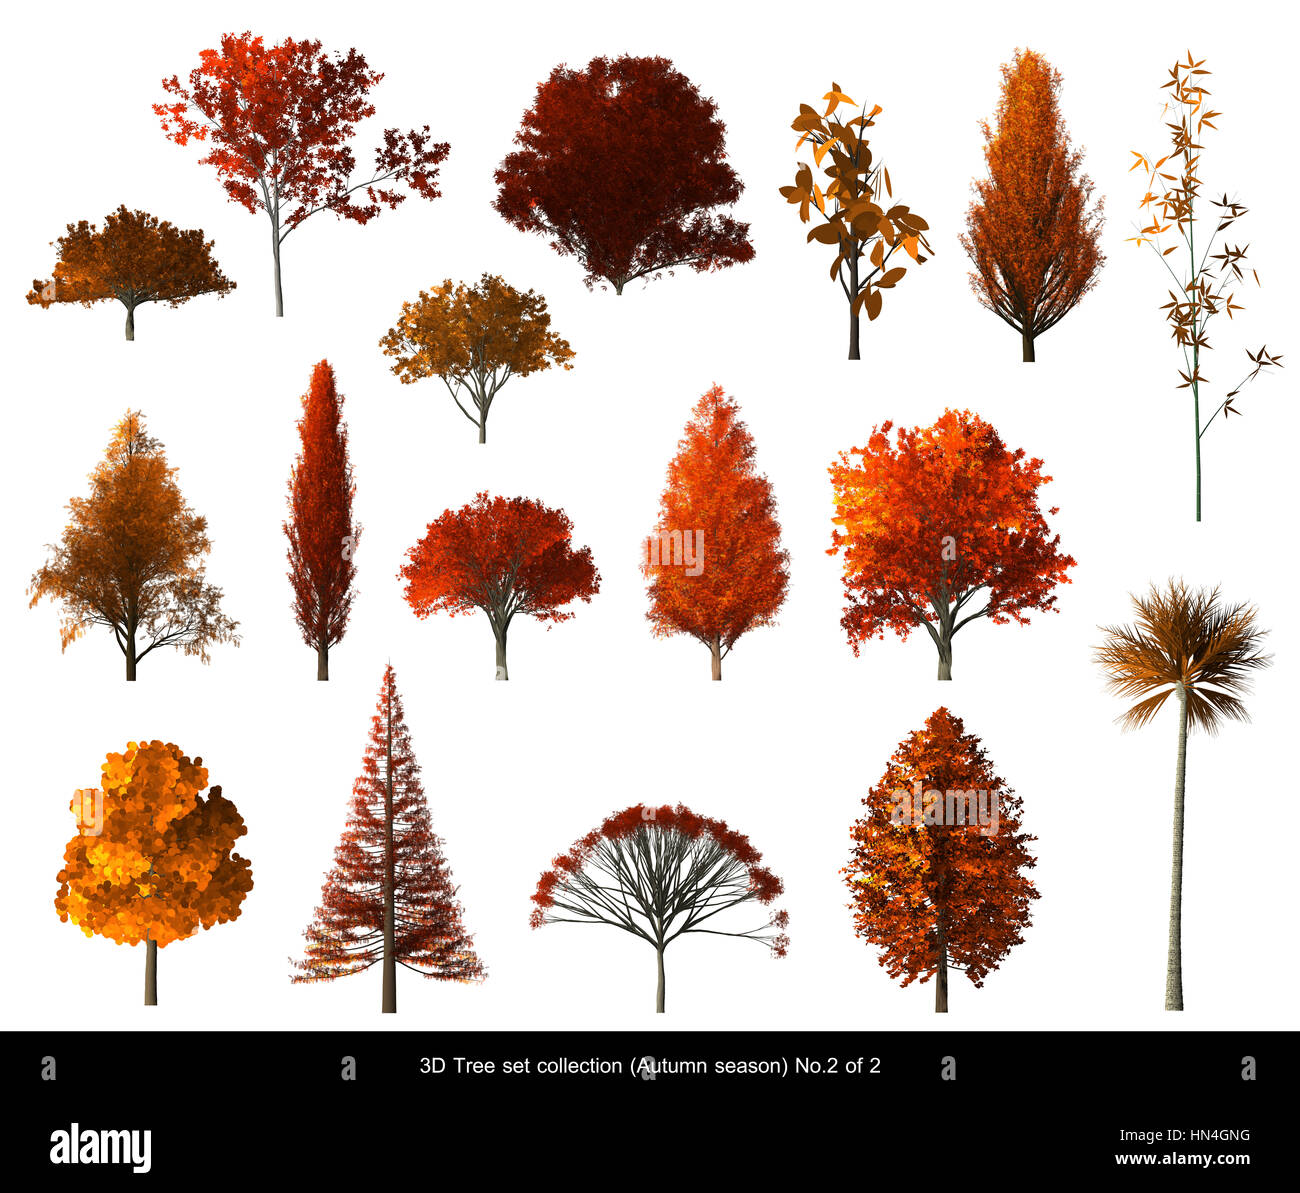 Rote Blatt Baum Herbst Saison Gesetzt Fur Landschafts Architektur Design 3d Baum Auf Weissen Nr 2 Isoliert Stockfotografie Alamy